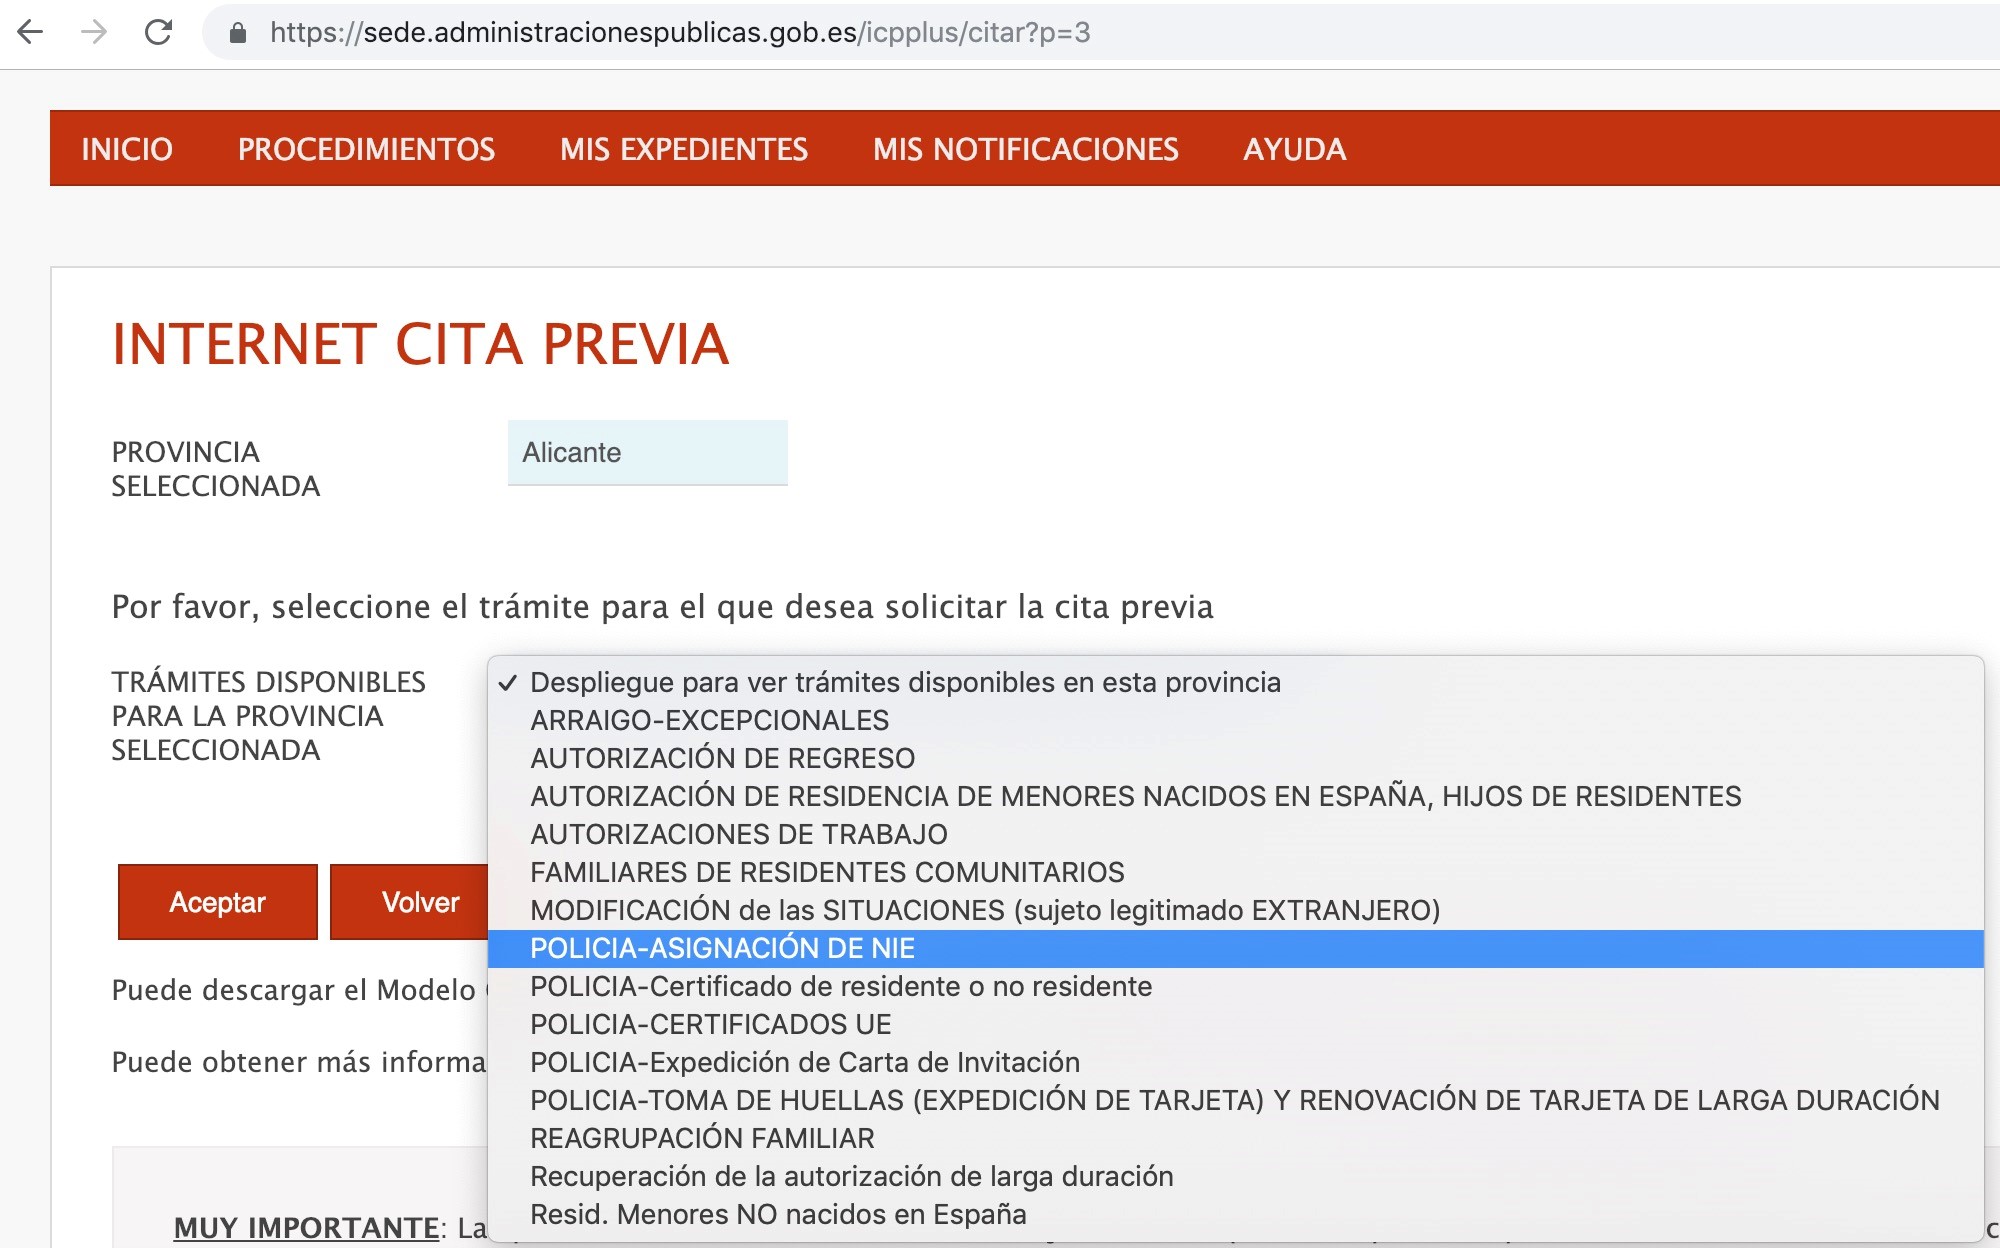 Скриншот электронной записи на подачу документов в Аликанте (в других провинциях выделенное поле может называться по-другому)